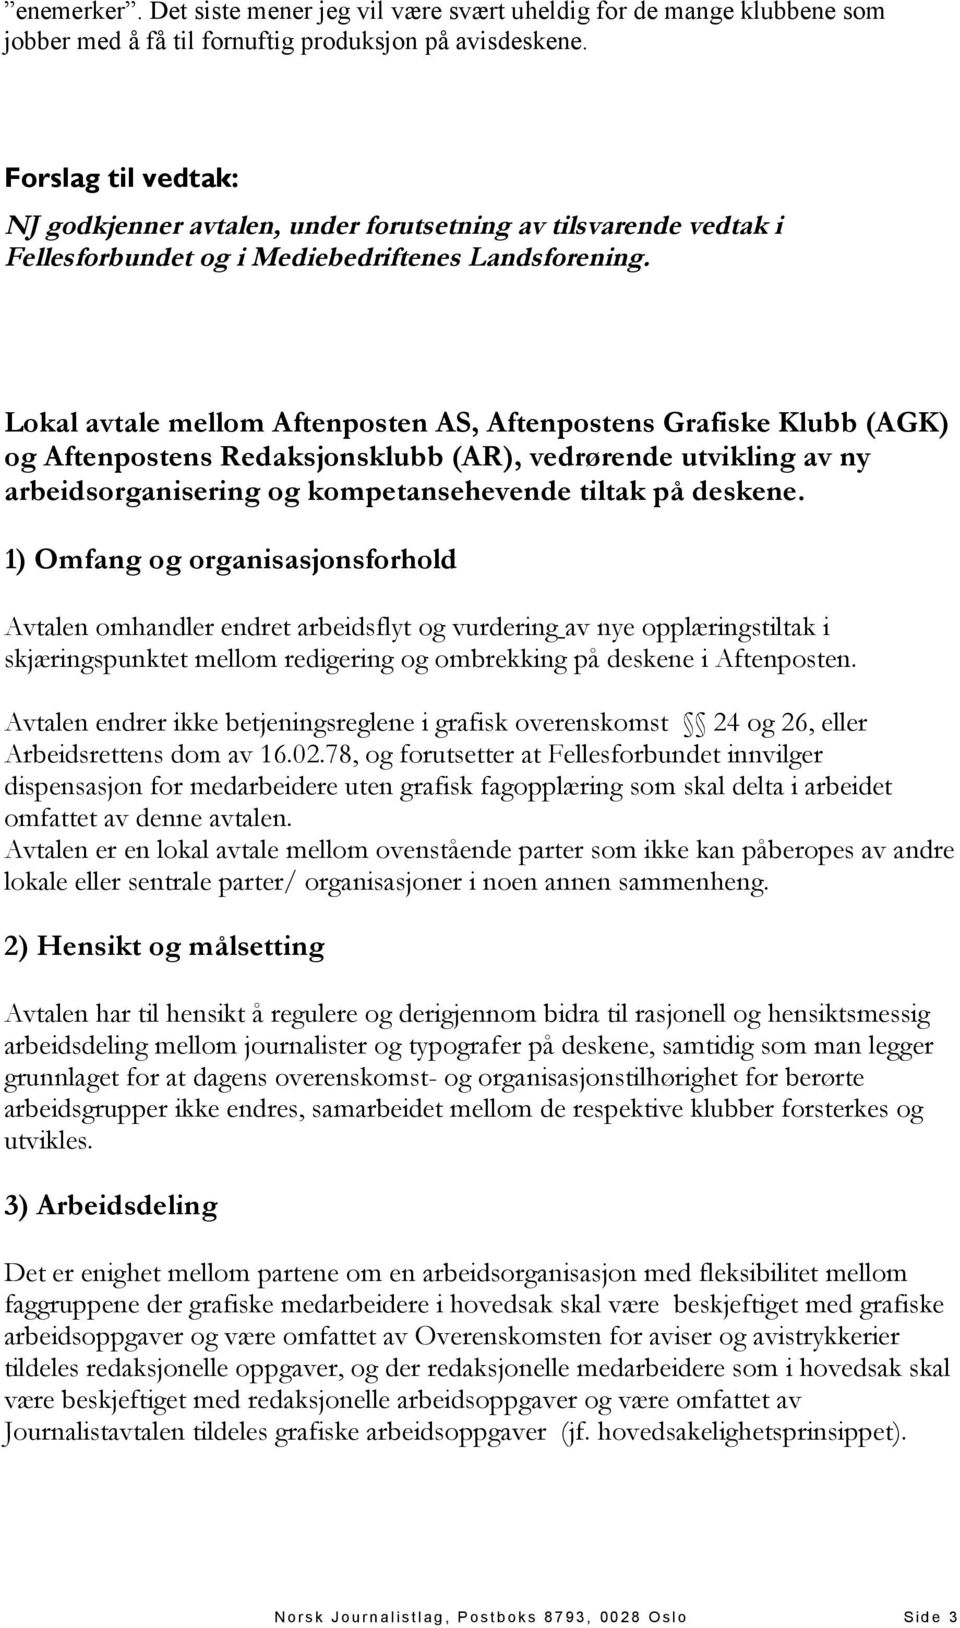 Lokal avtale mellom Aftenposten AS, Aftenpostens Grafiske Klubb (AGK) og Aftenpostens Redaksjonsklubb (AR), vedrørende utvikling av ny arbeidsorganisering og kompetansehevende tiltak på deskene.